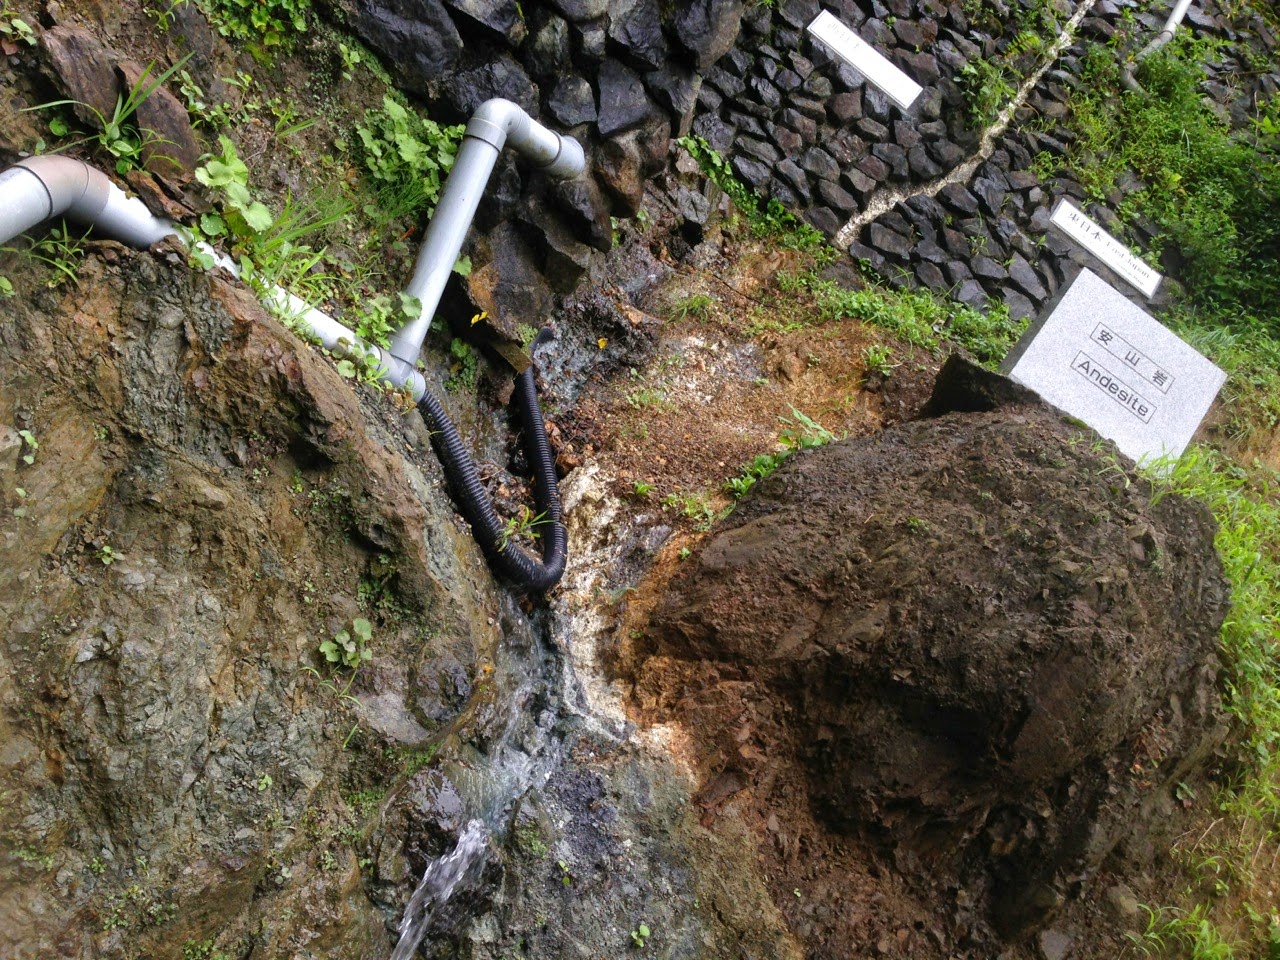 糸魚川静岡構造線